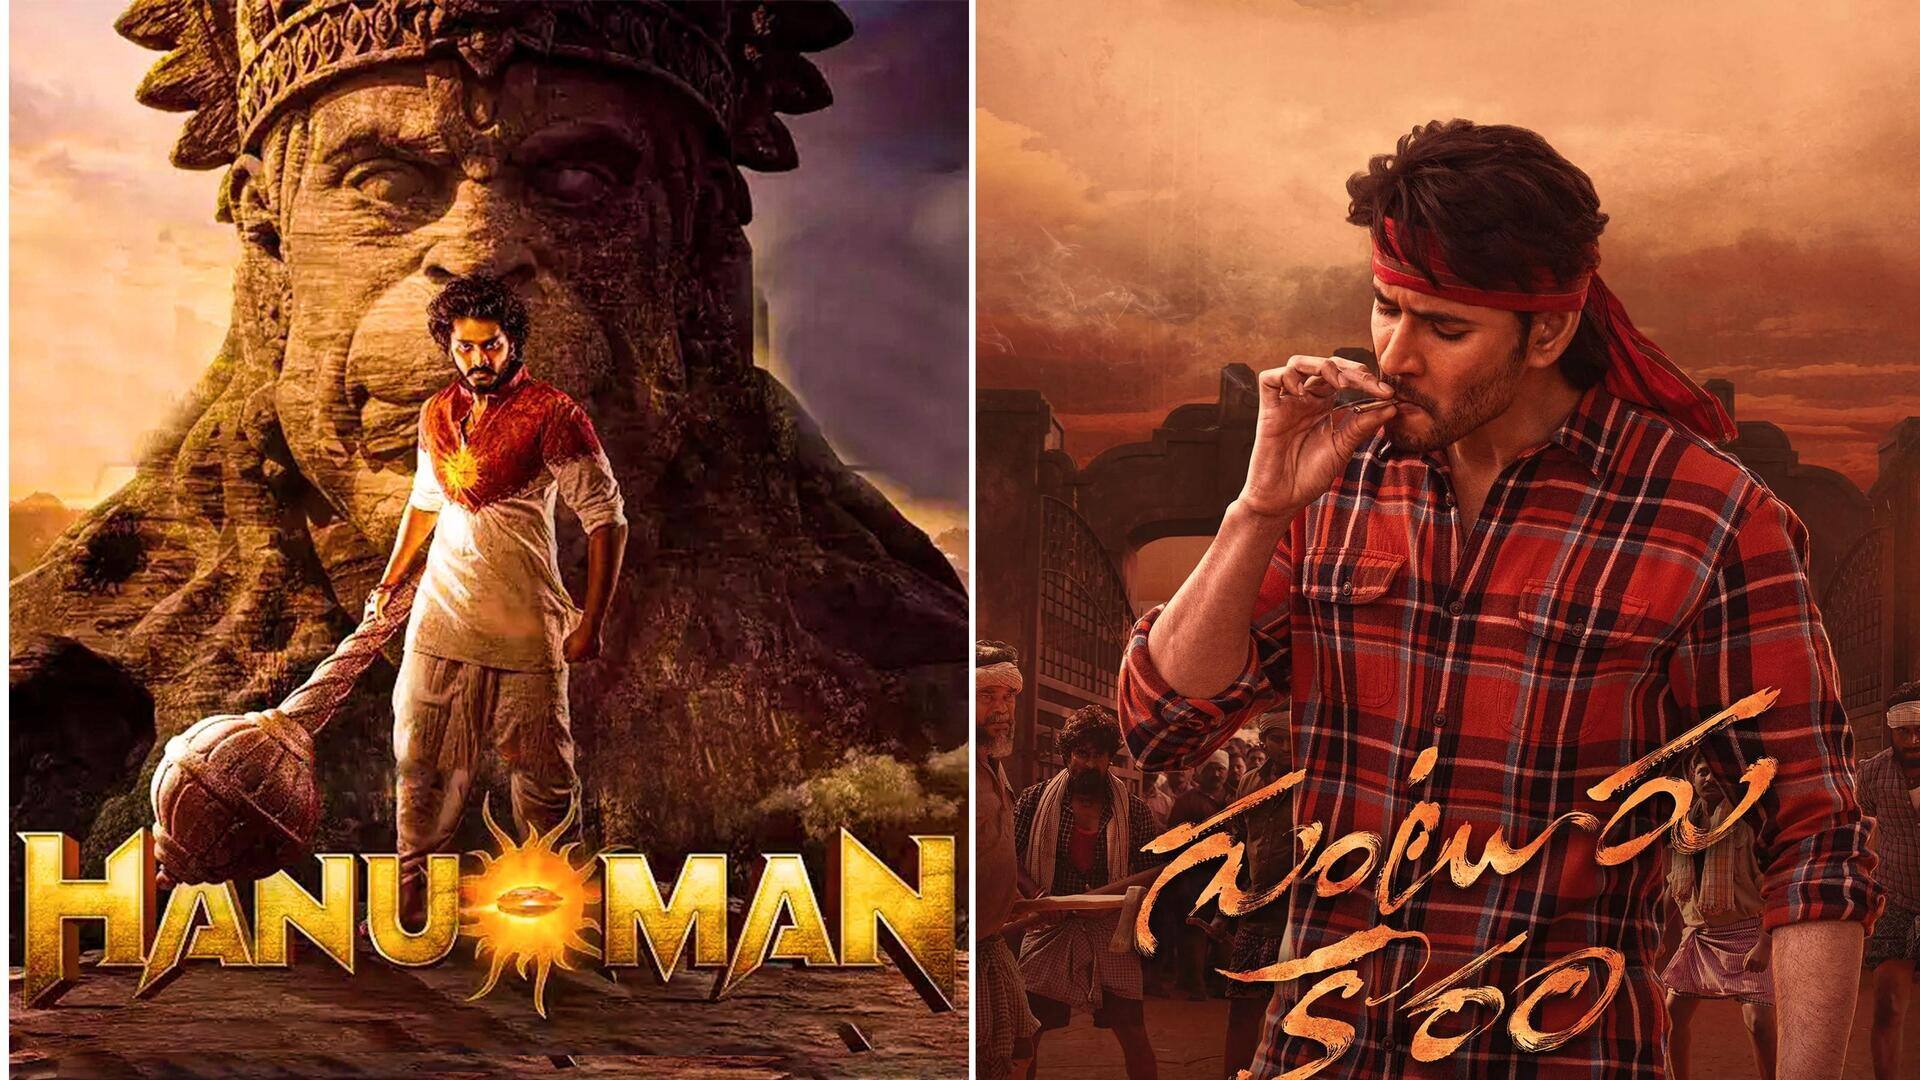 'हनुमान' संग सिनेमाघरों के मालिकों का भेदभाव जारी, 'गुंटूर कारम' से बदले गए फिल्म के शो 